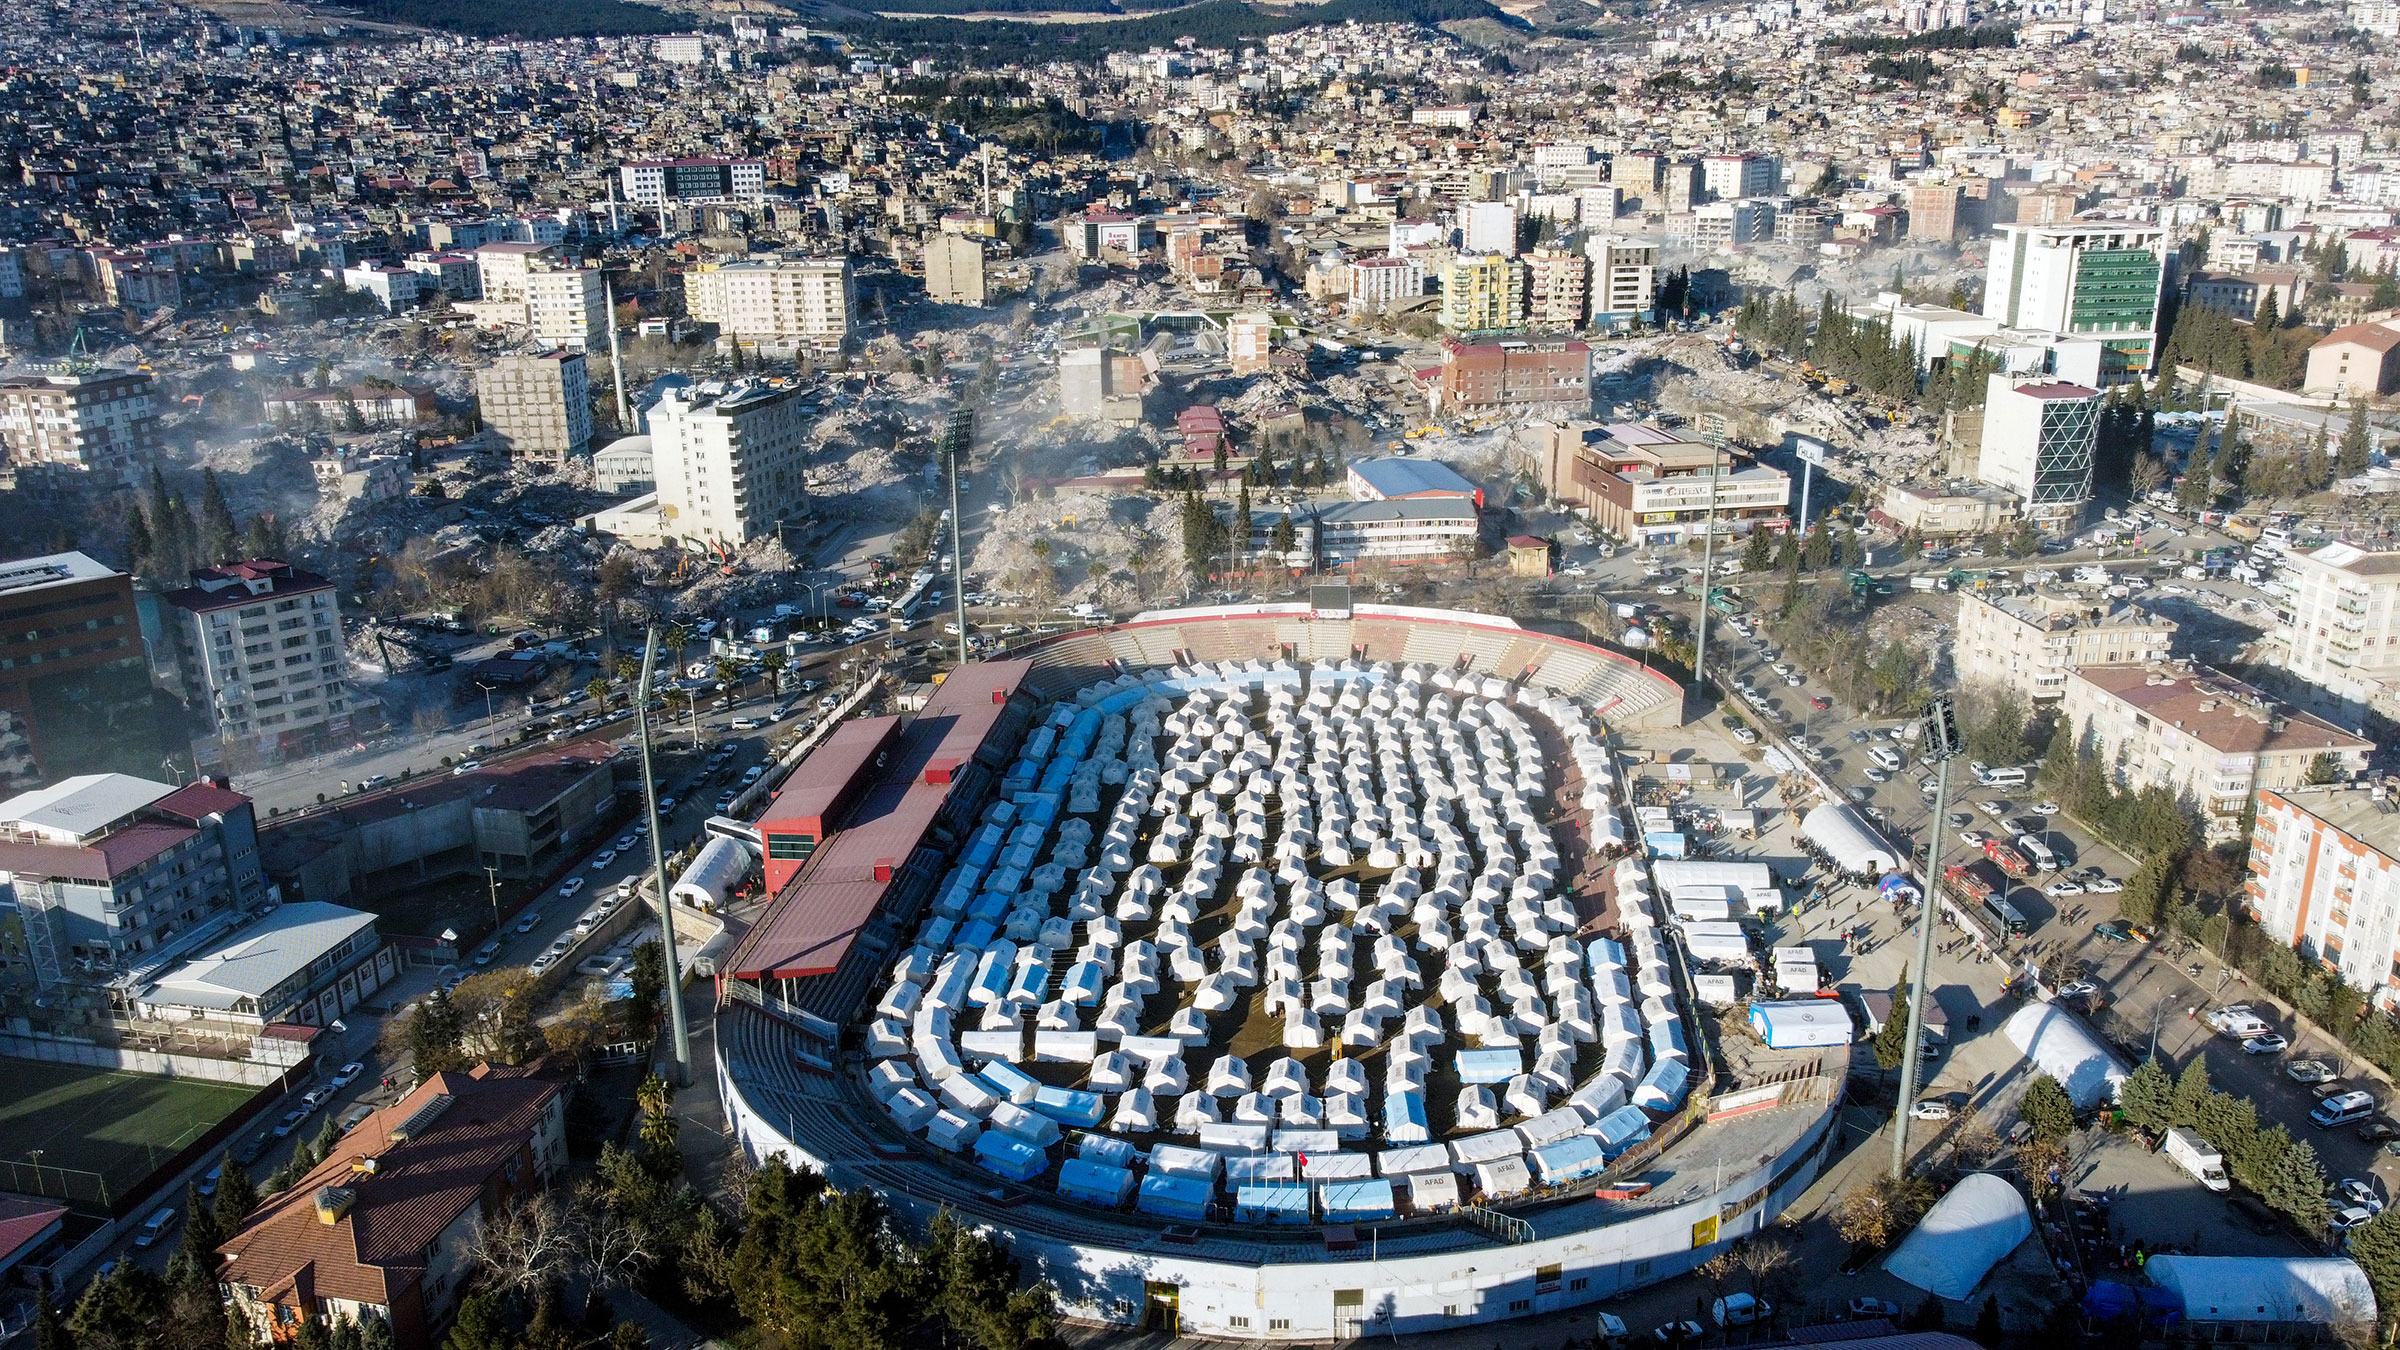 Quang cảnh Sân vận động 12 Subat sau những chiếc lều do Cơ quan Quản lý Thiên tai Thổ Nhĩ Kỳ (AFAD) dựng lên cho các nạn nhân động đất, ở trung tâm thành phố Kahramanmaras vào ngày 15 tháng 2 năm 2023. (Mehmet Kaman—Cơ quan Anadolu/Getty Images)